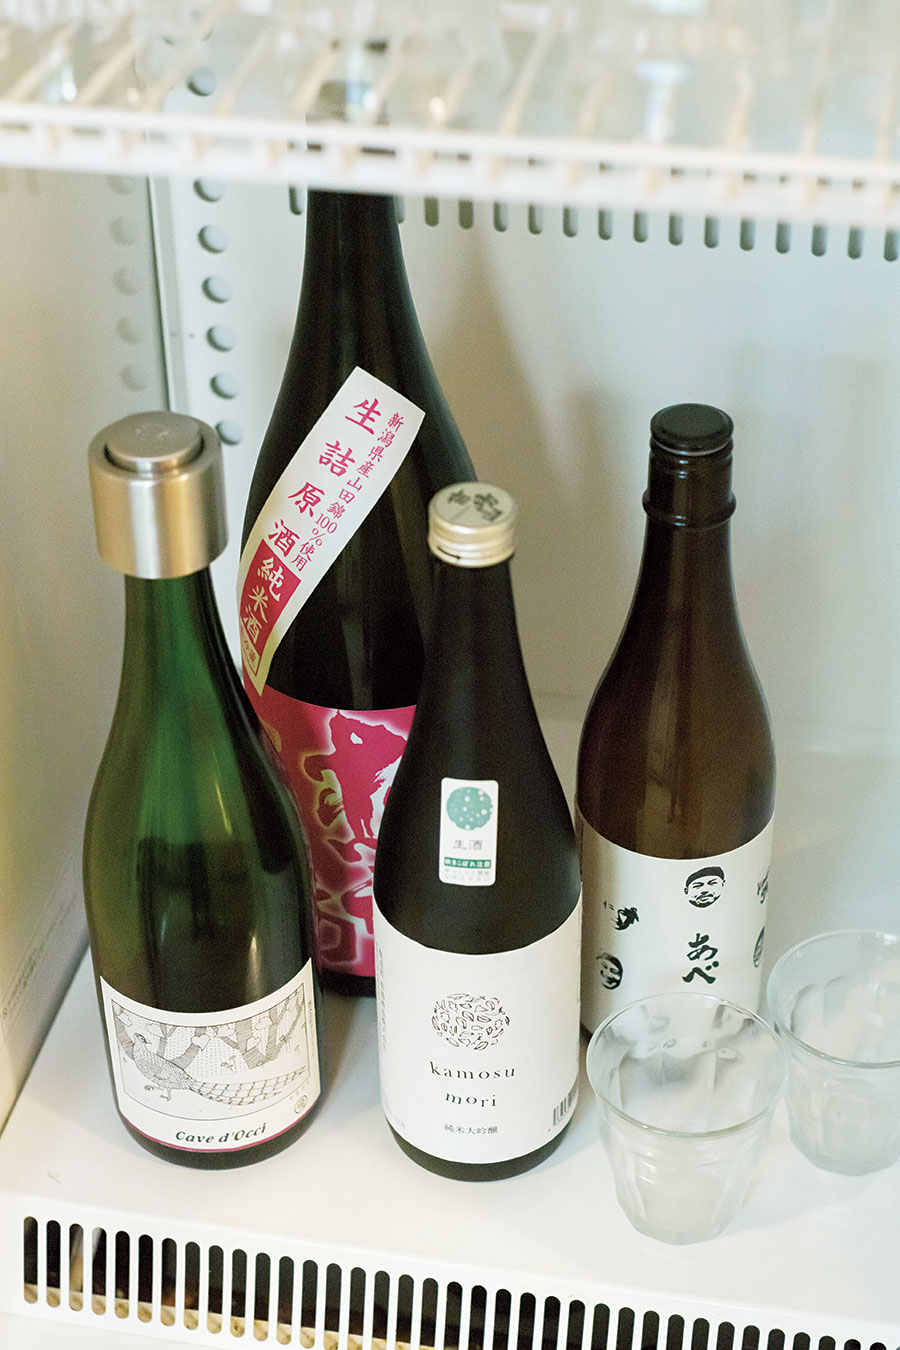 大浴場の湯上がりには日本酒やワインのフリードリンクを用意。冷たい湧水も甘露。